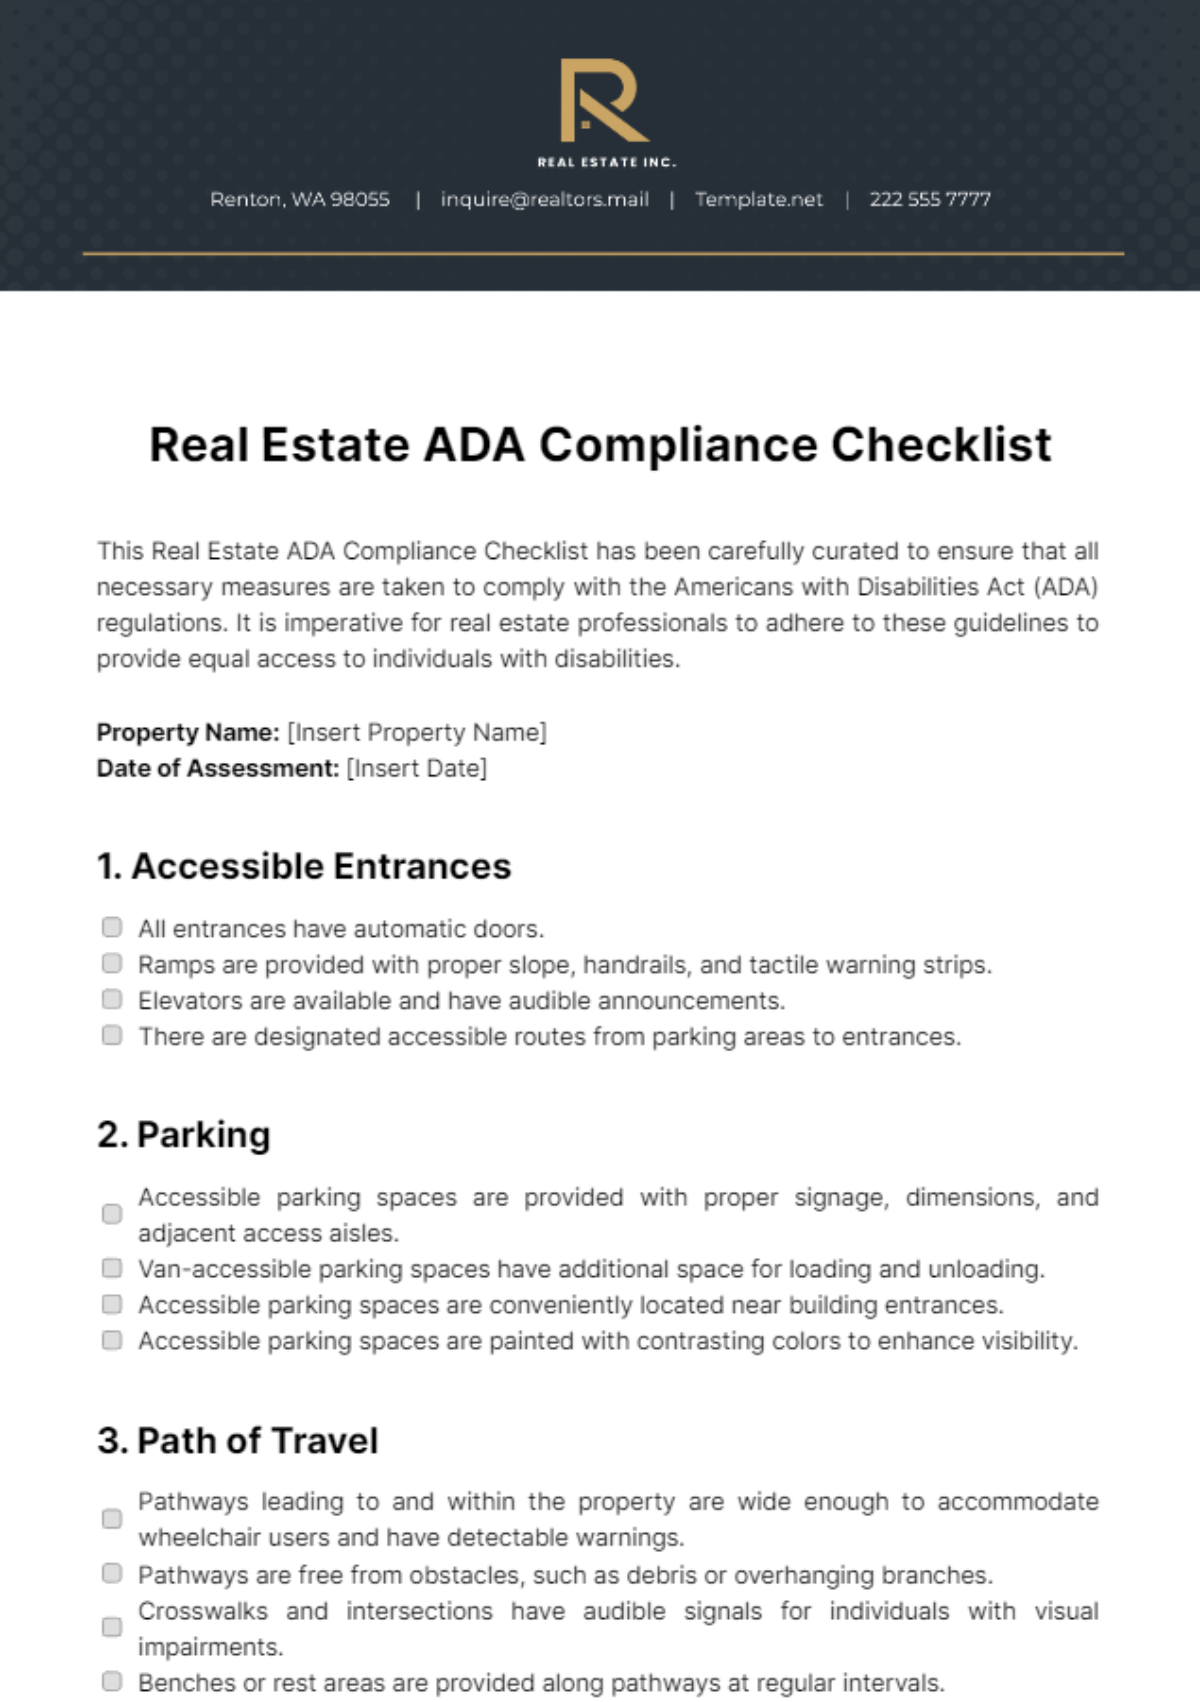 Real Estate ADA Compliance Checklist Template